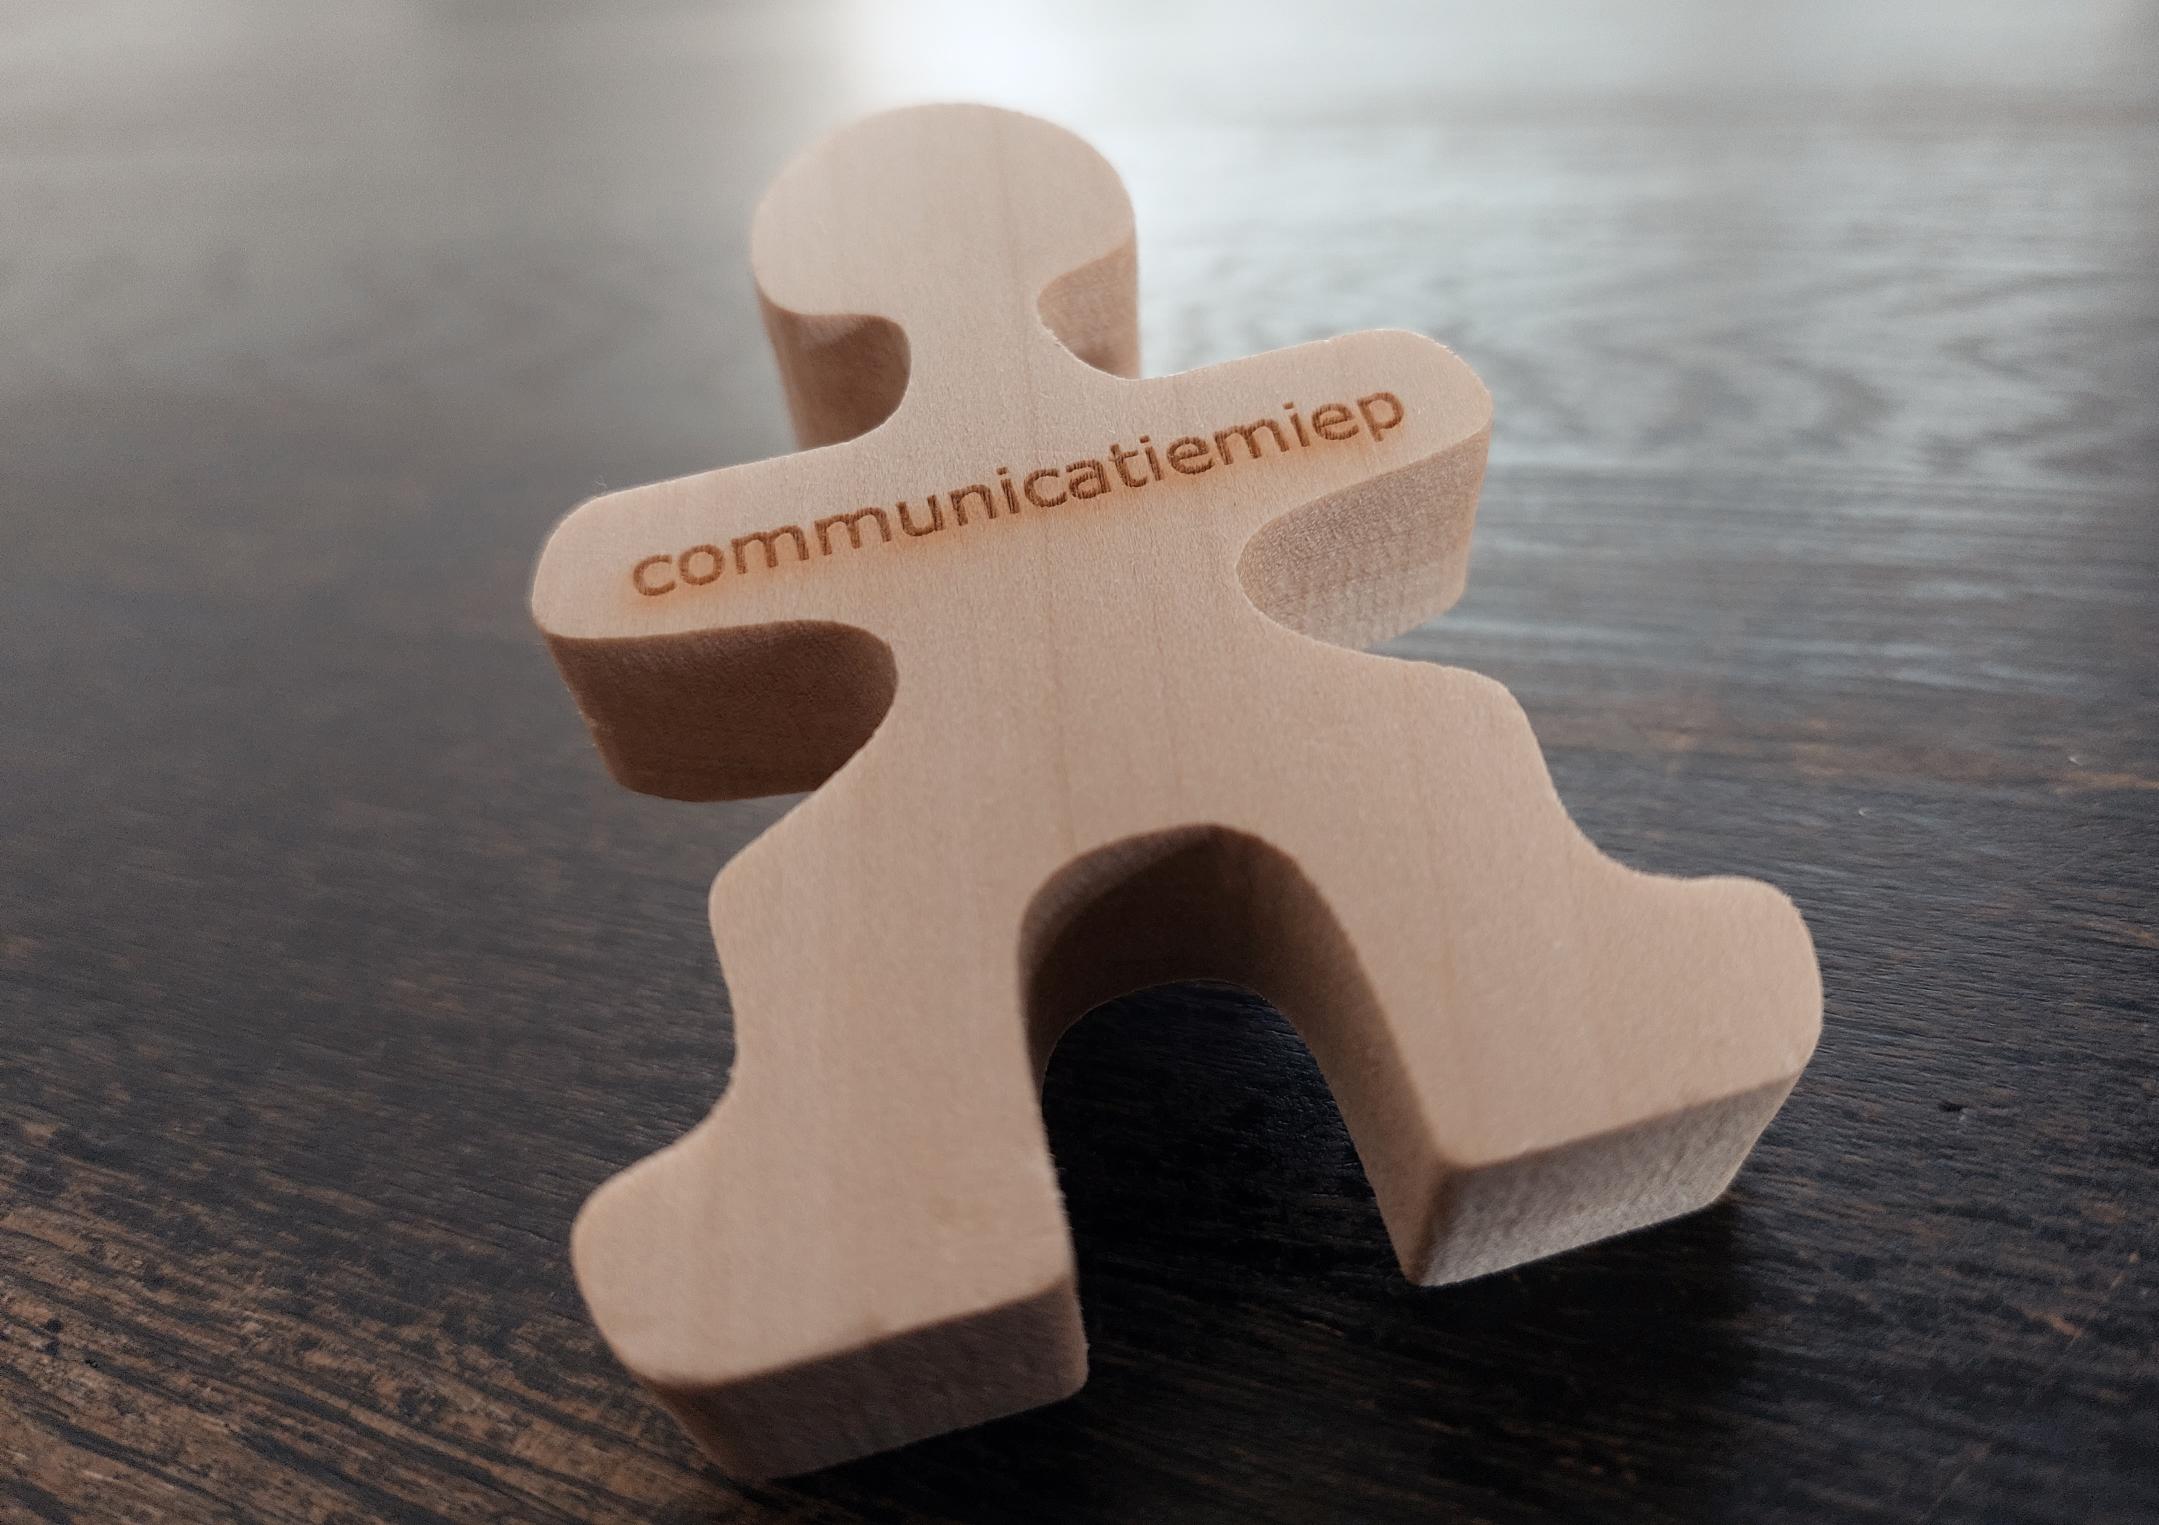 Communicatie